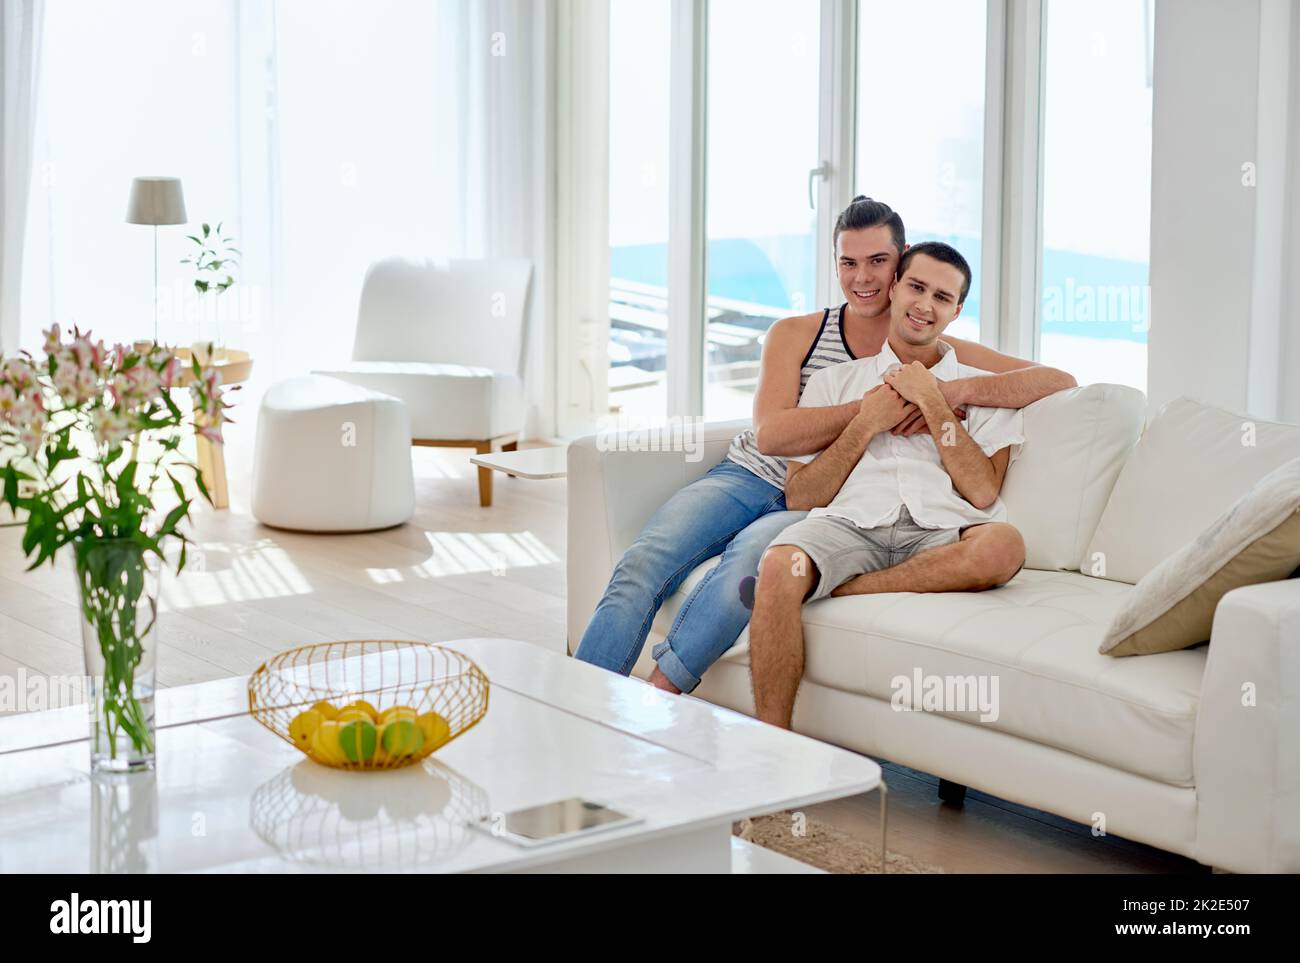 Notre maison est pleine d'amour. Portrait d'un jeune couple gay se relaxant sur un canapé à la maison. Banque D'Images